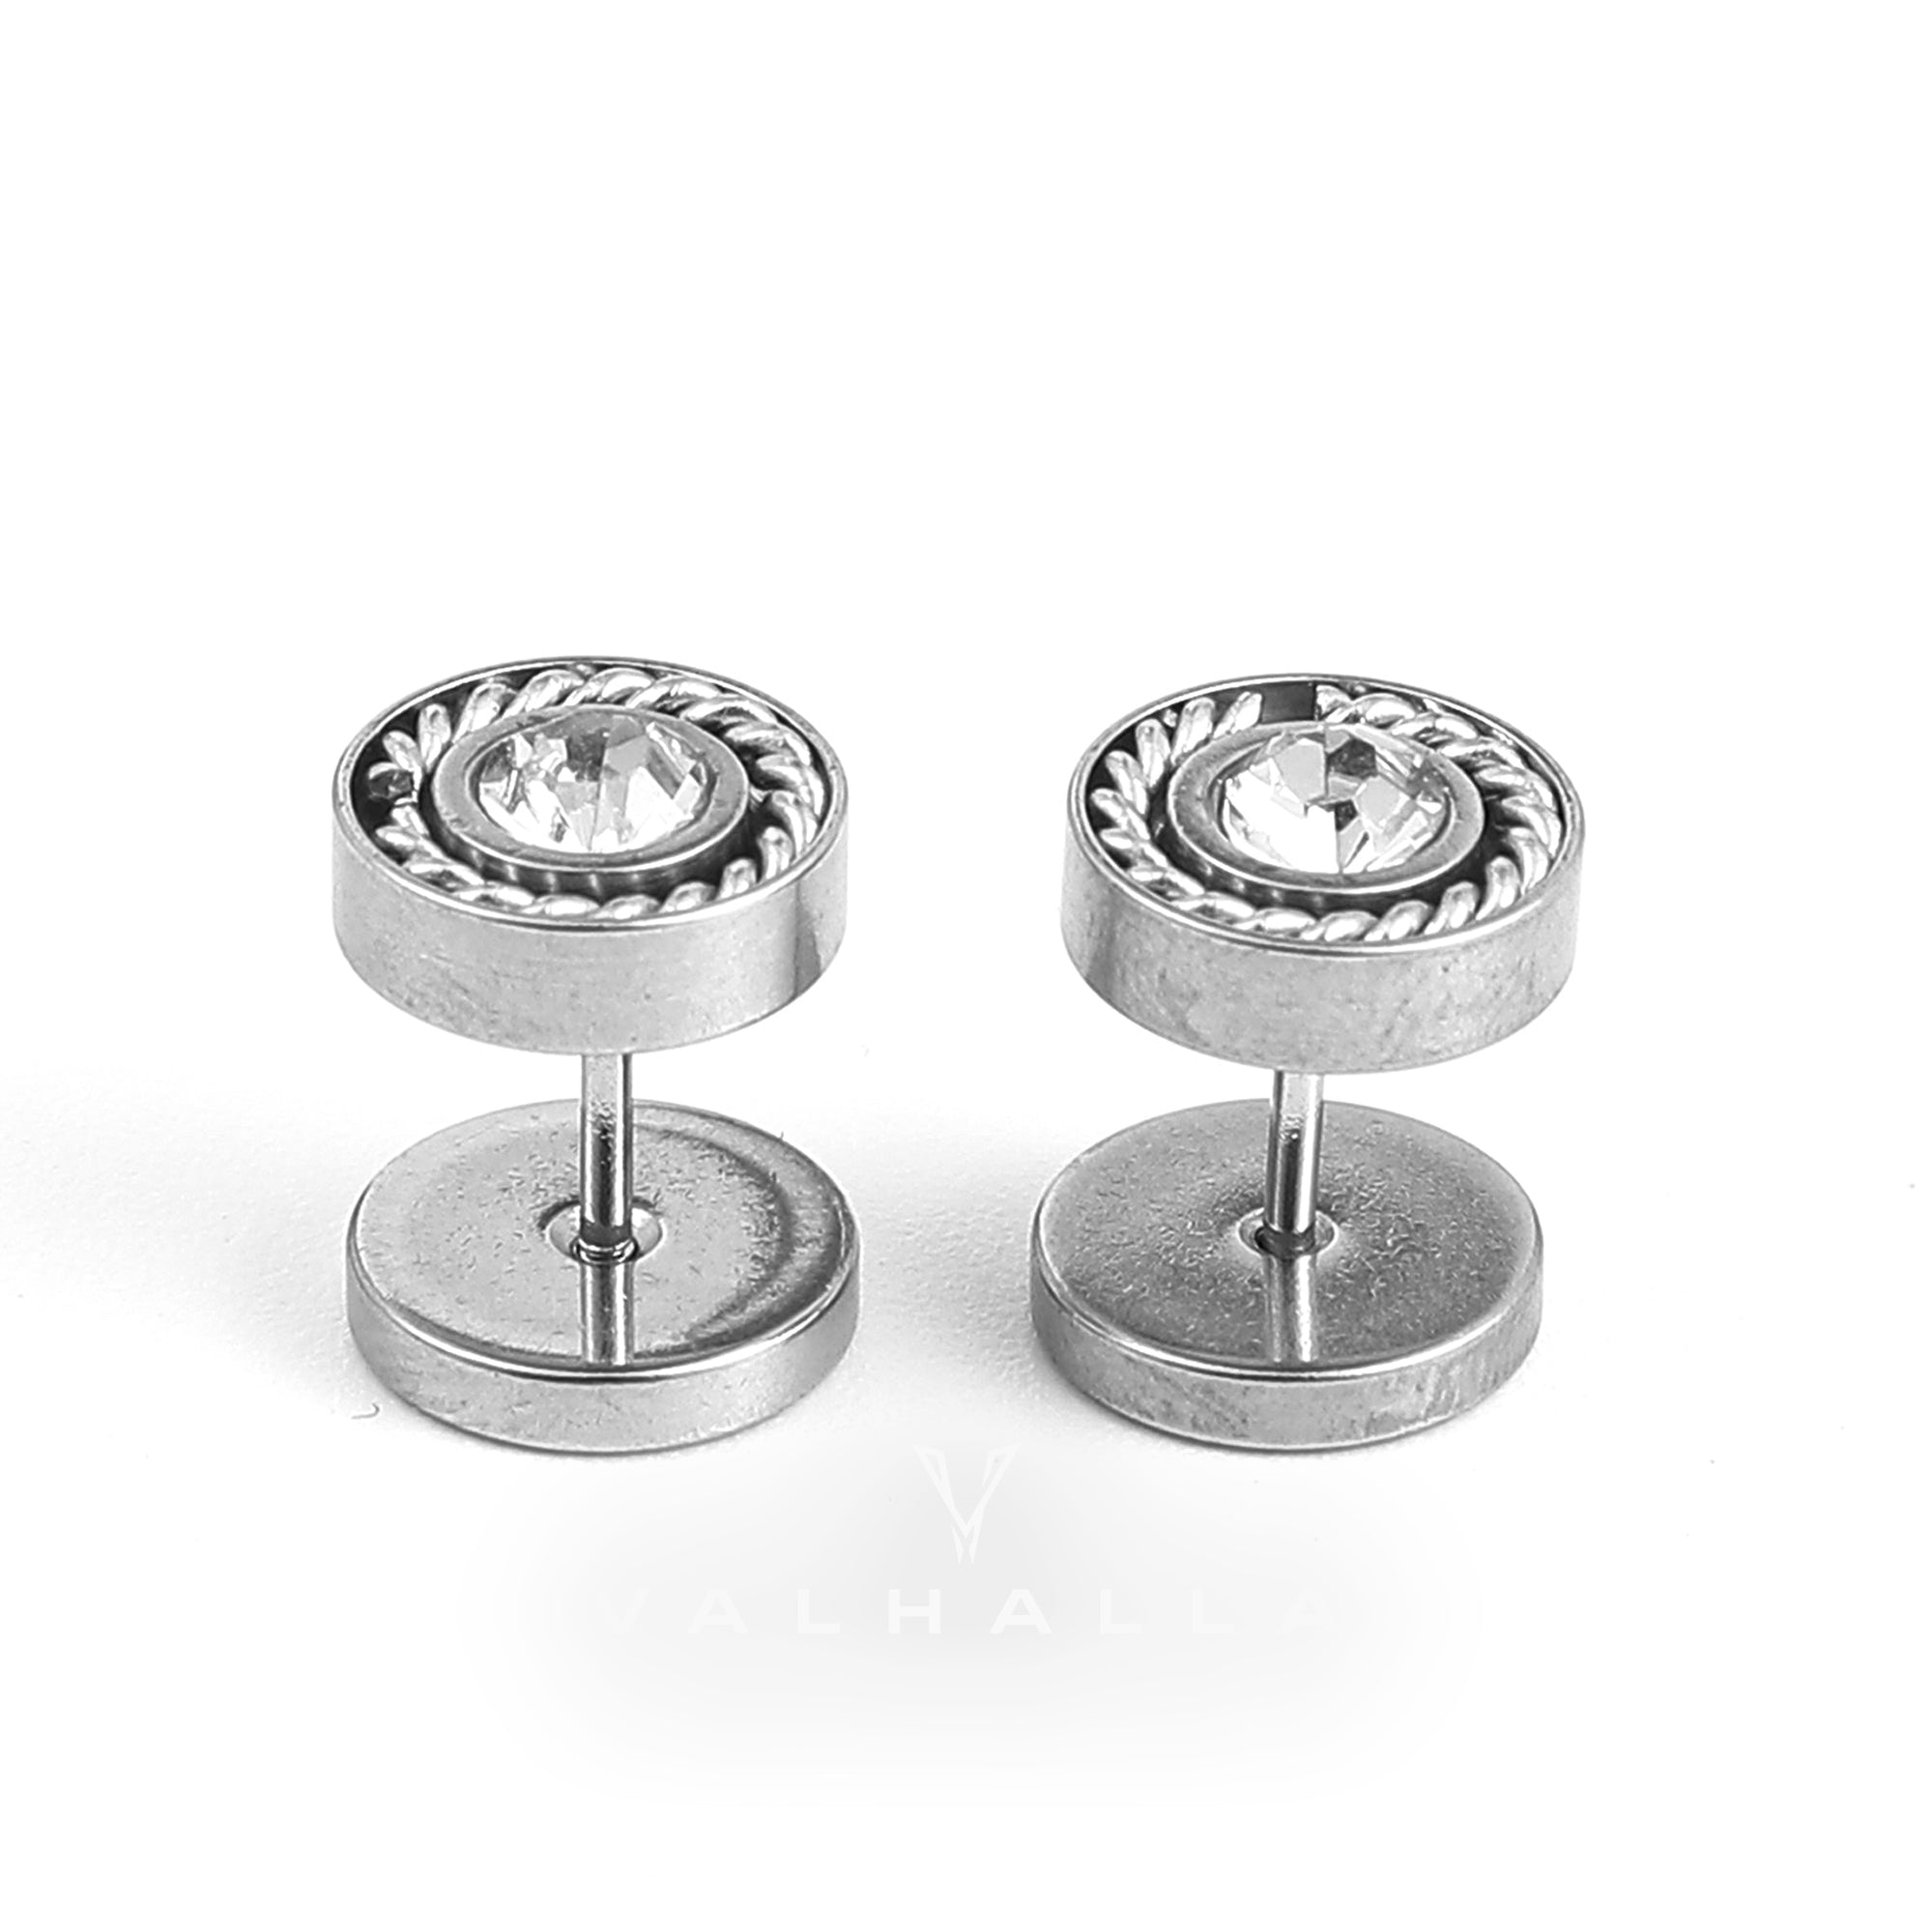 Minimalist Round Zircon Stainless Steel Stud Earrings